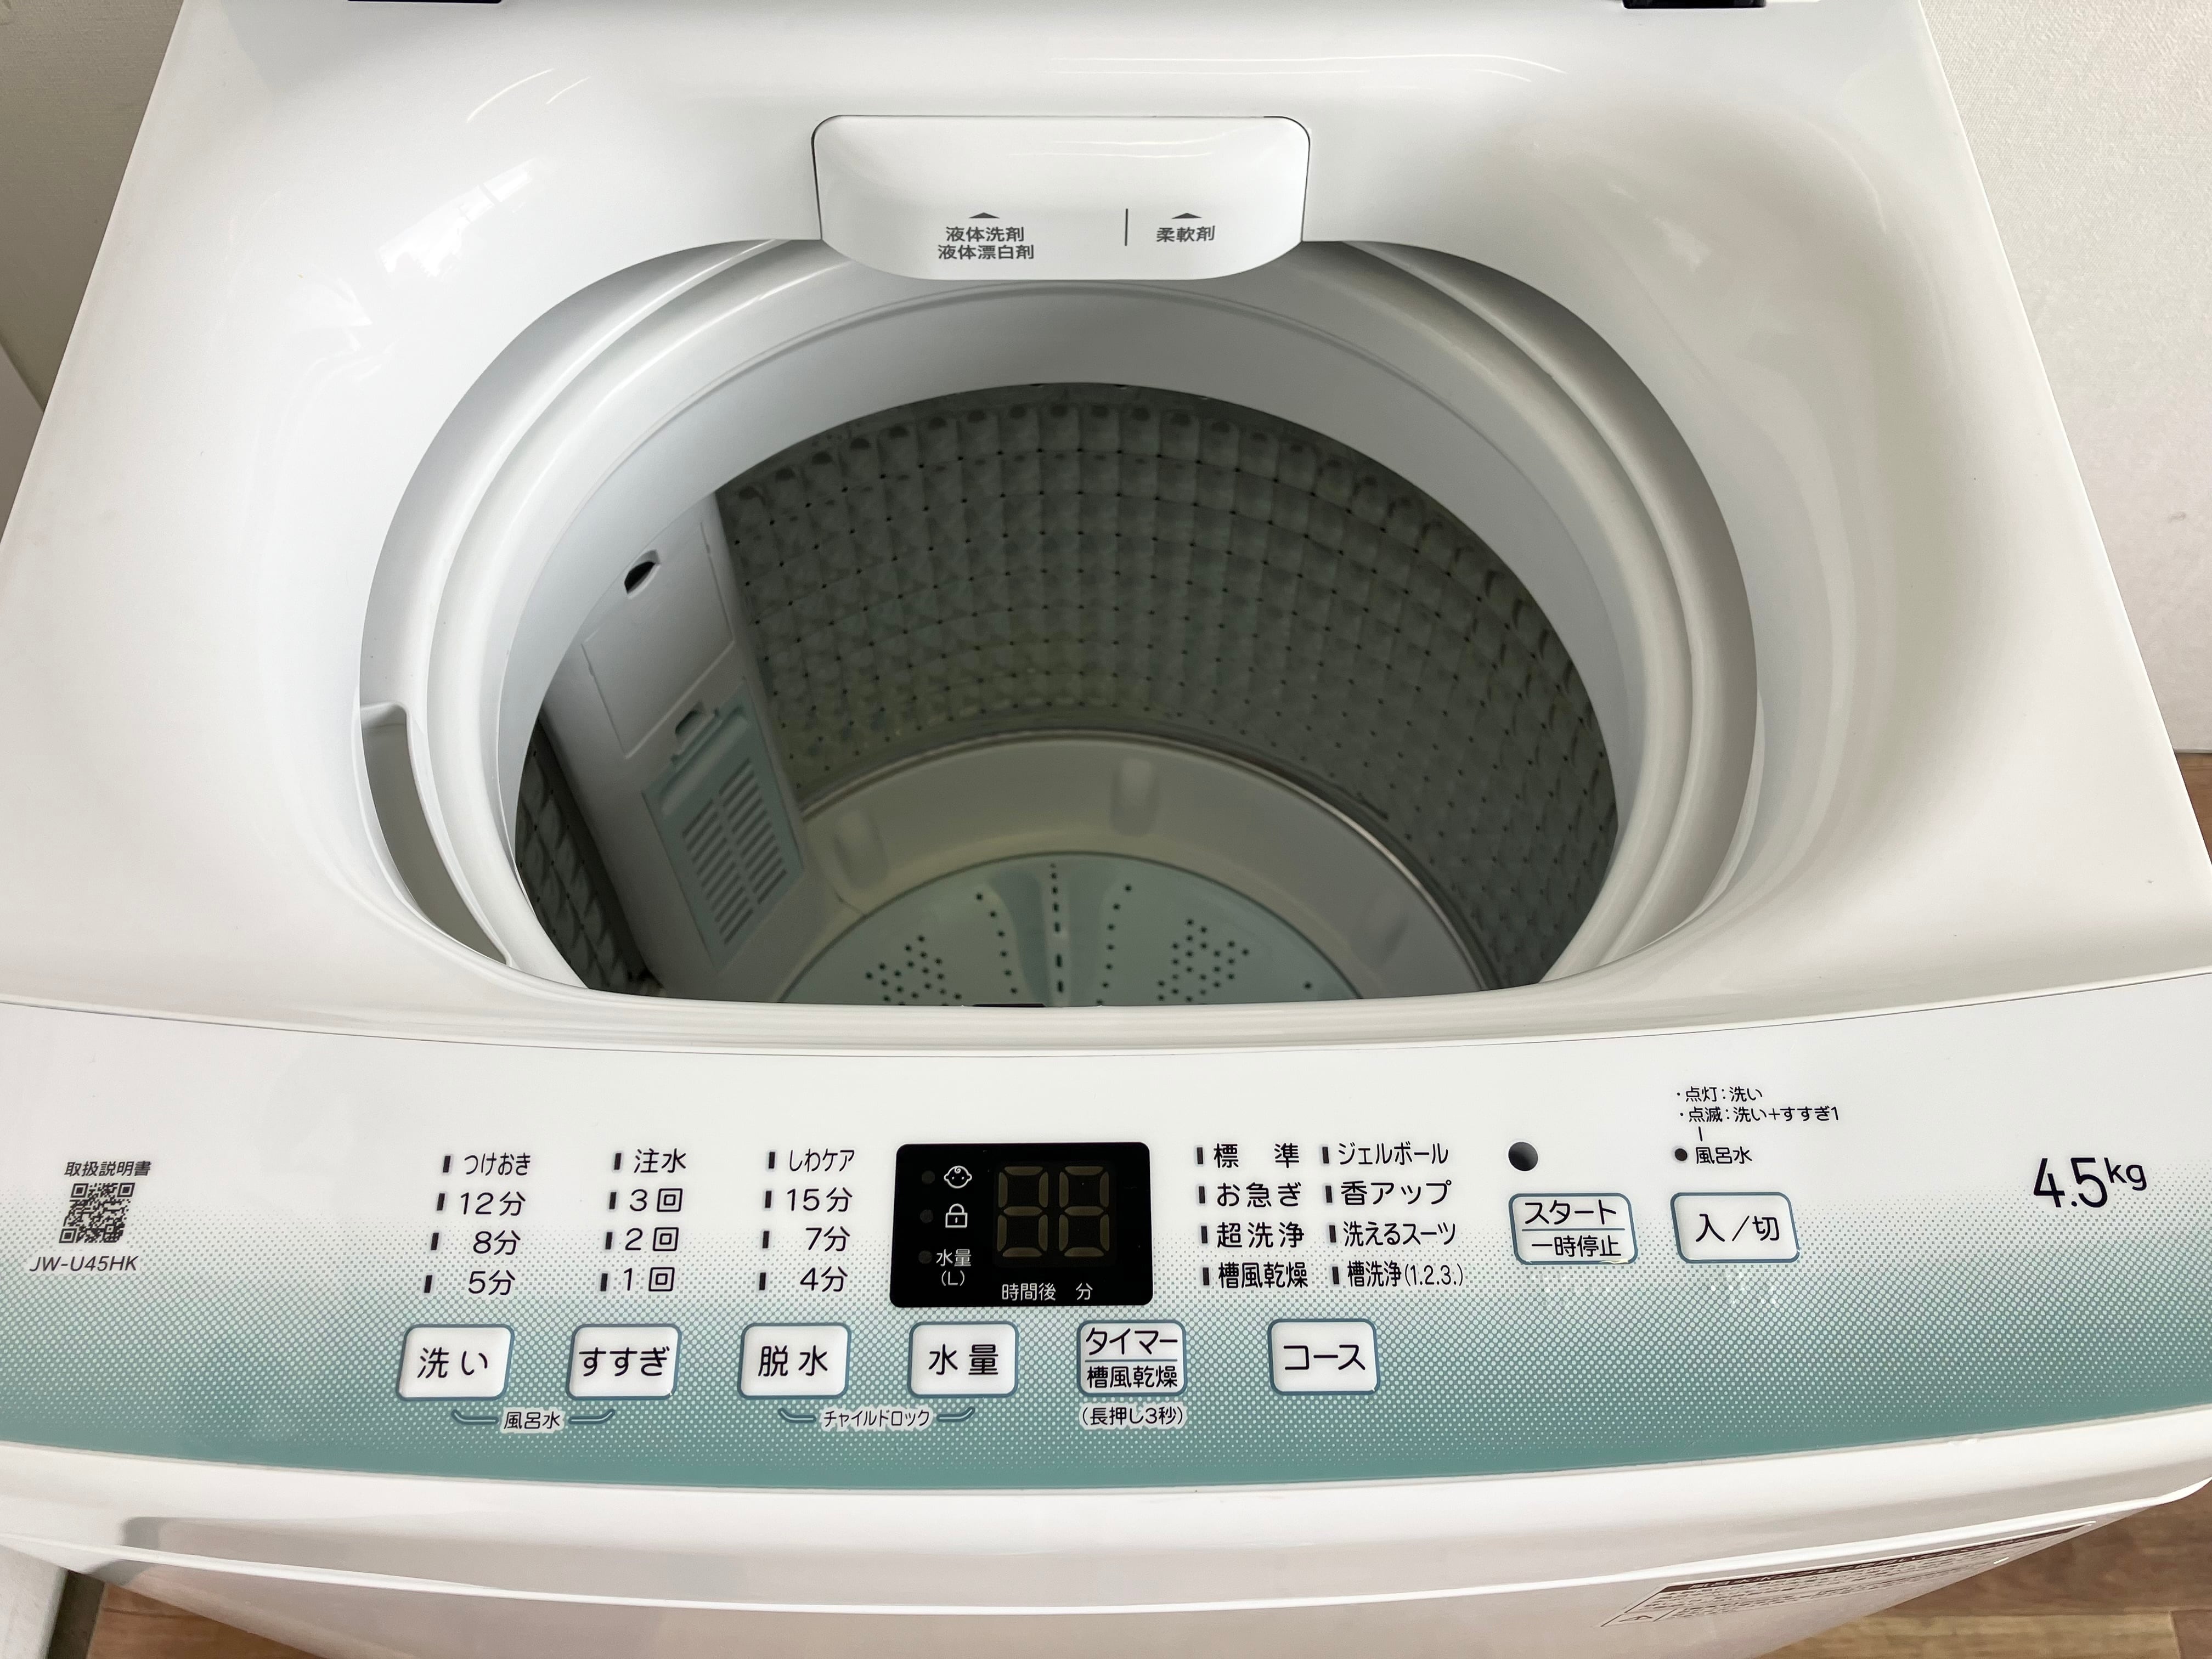 32名古屋市等送料無料★Haier 洗濯機 BW-45A 4.5kg 22年製45kg